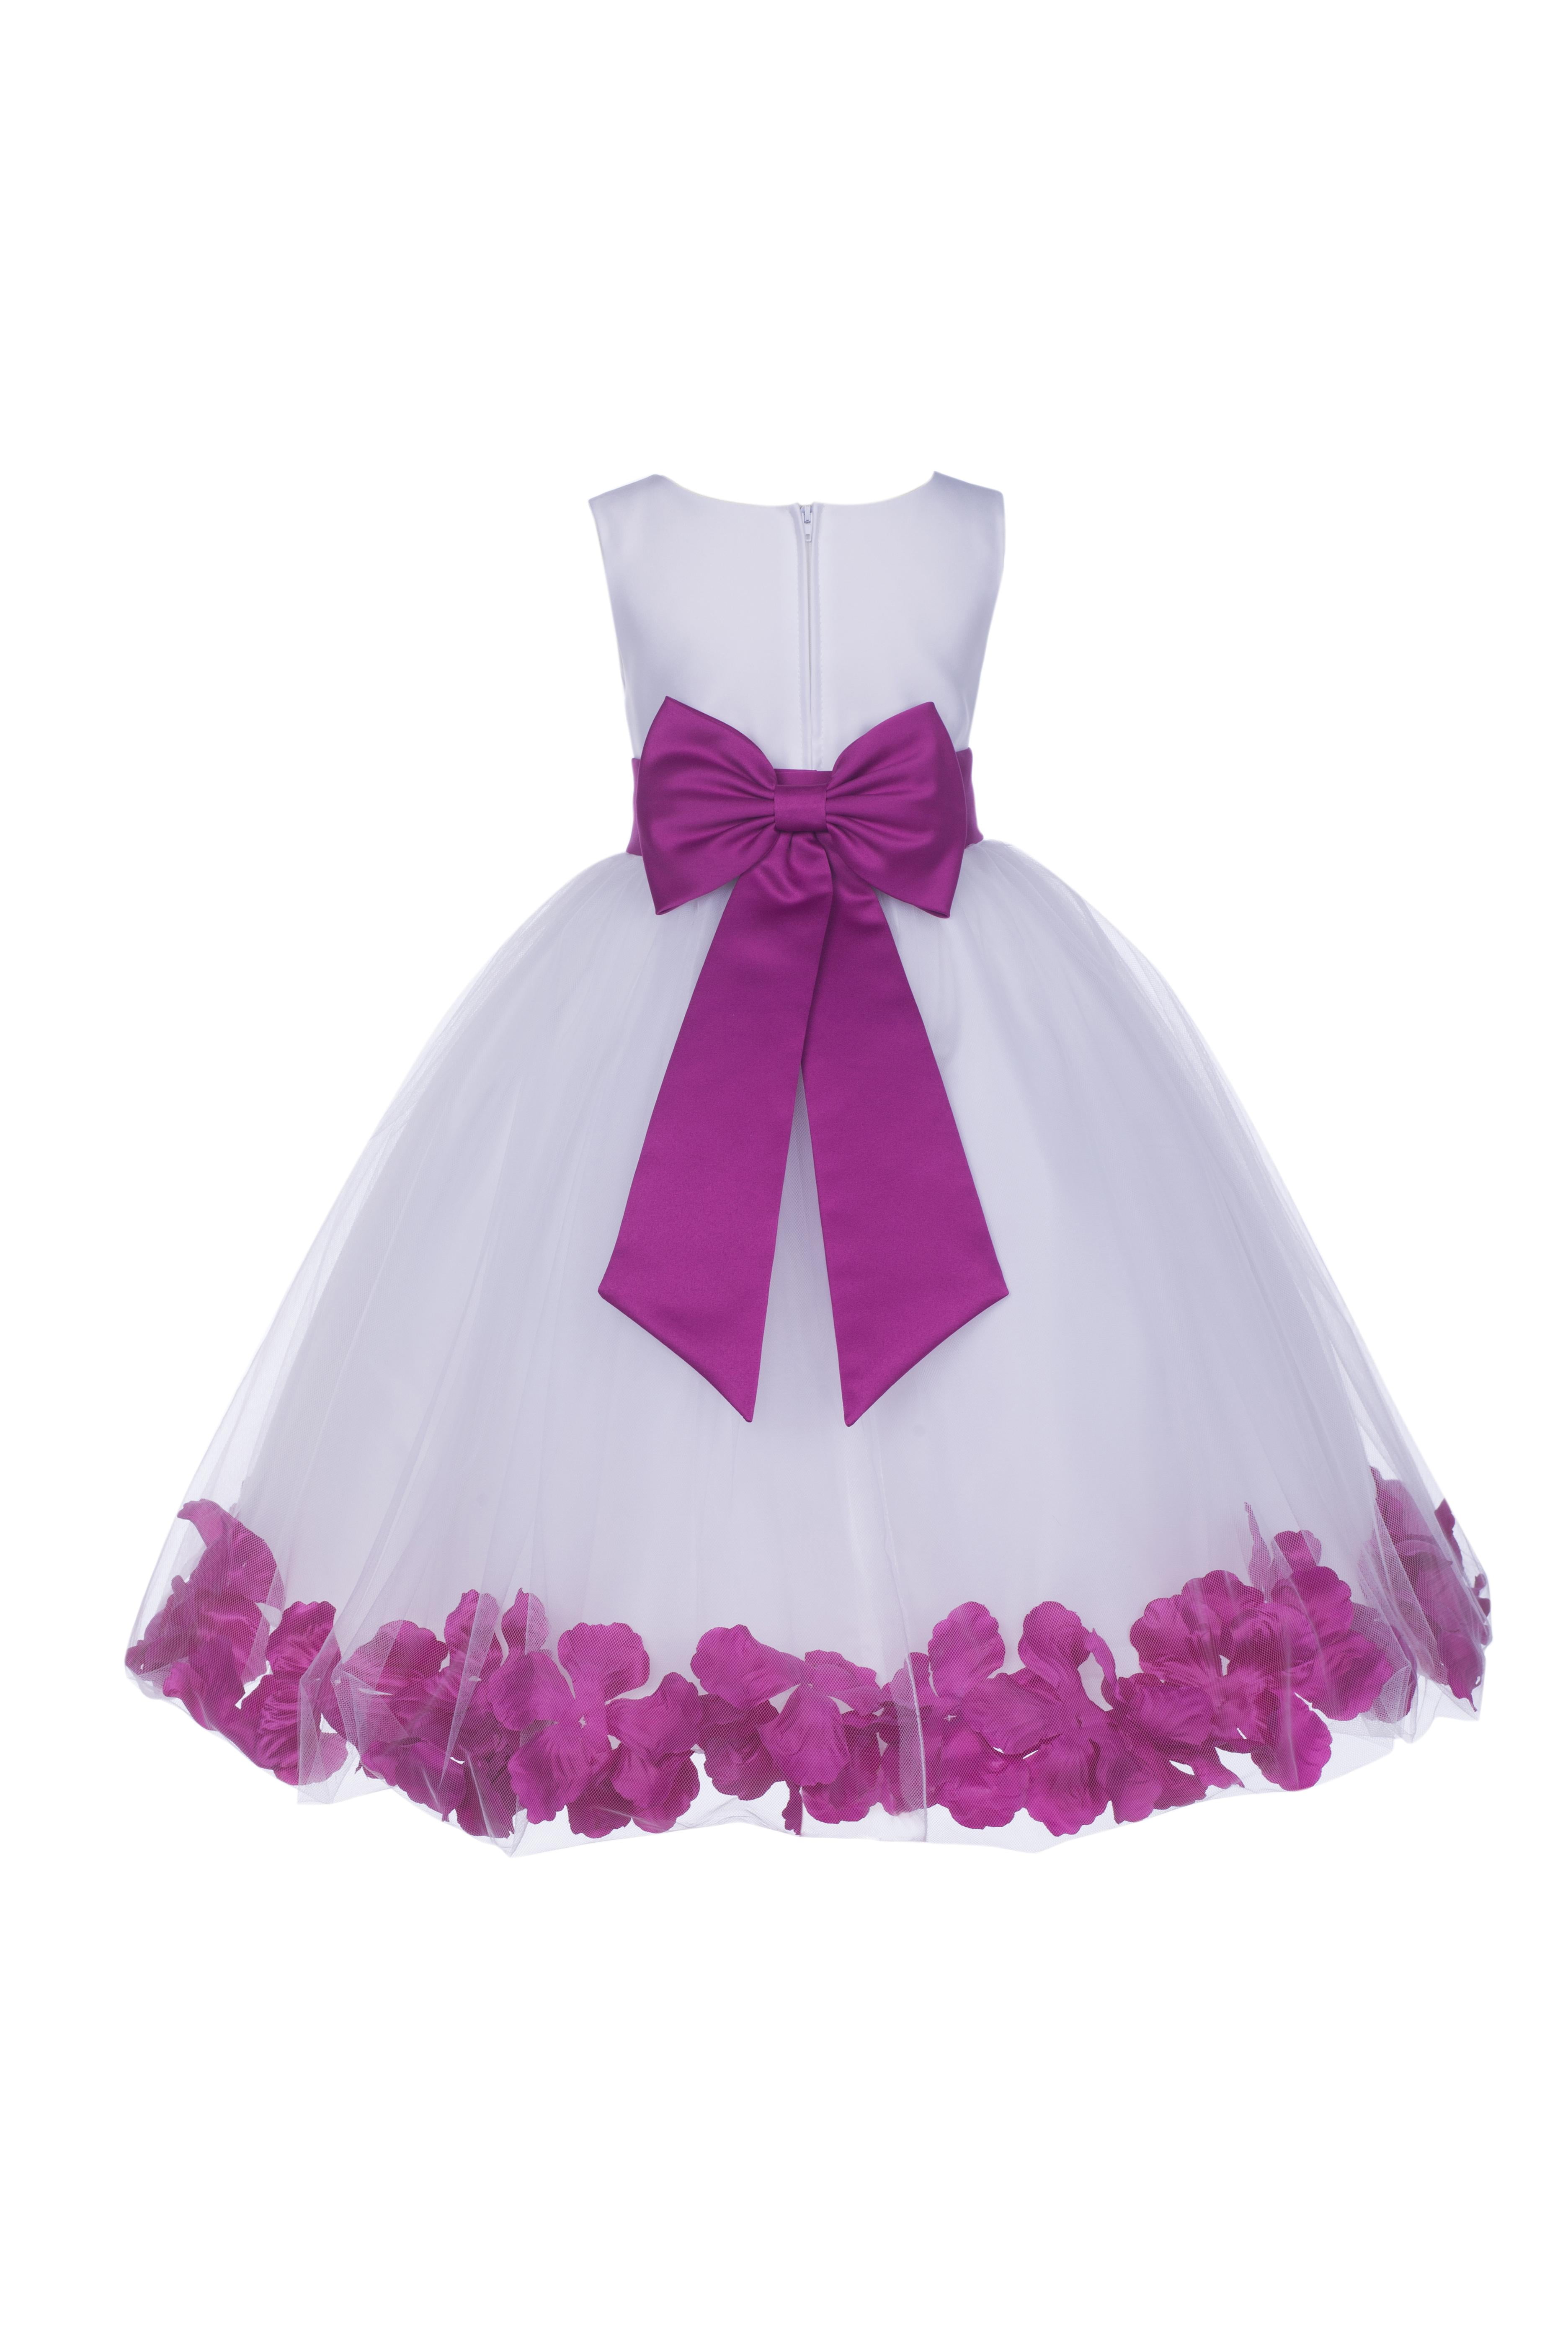 ekidsbridal White Floral Rose Petals Flower Girl Dress Birthday Girl Dress Junior Flower Girl Dresses 302s 